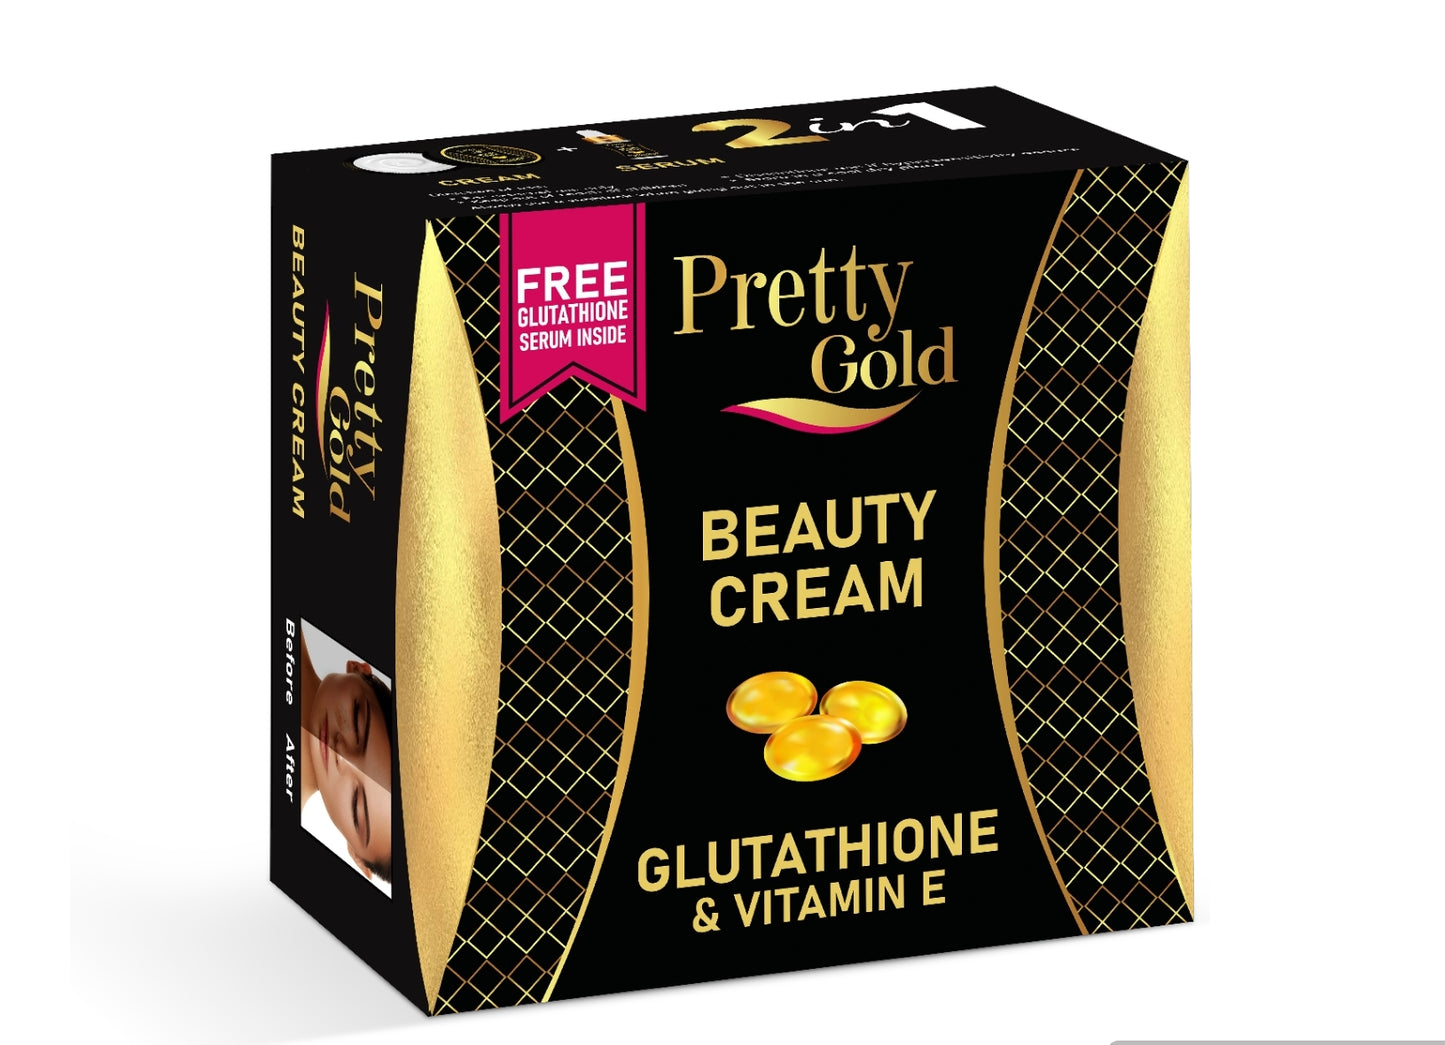 Pretty Gold Beauty Cream